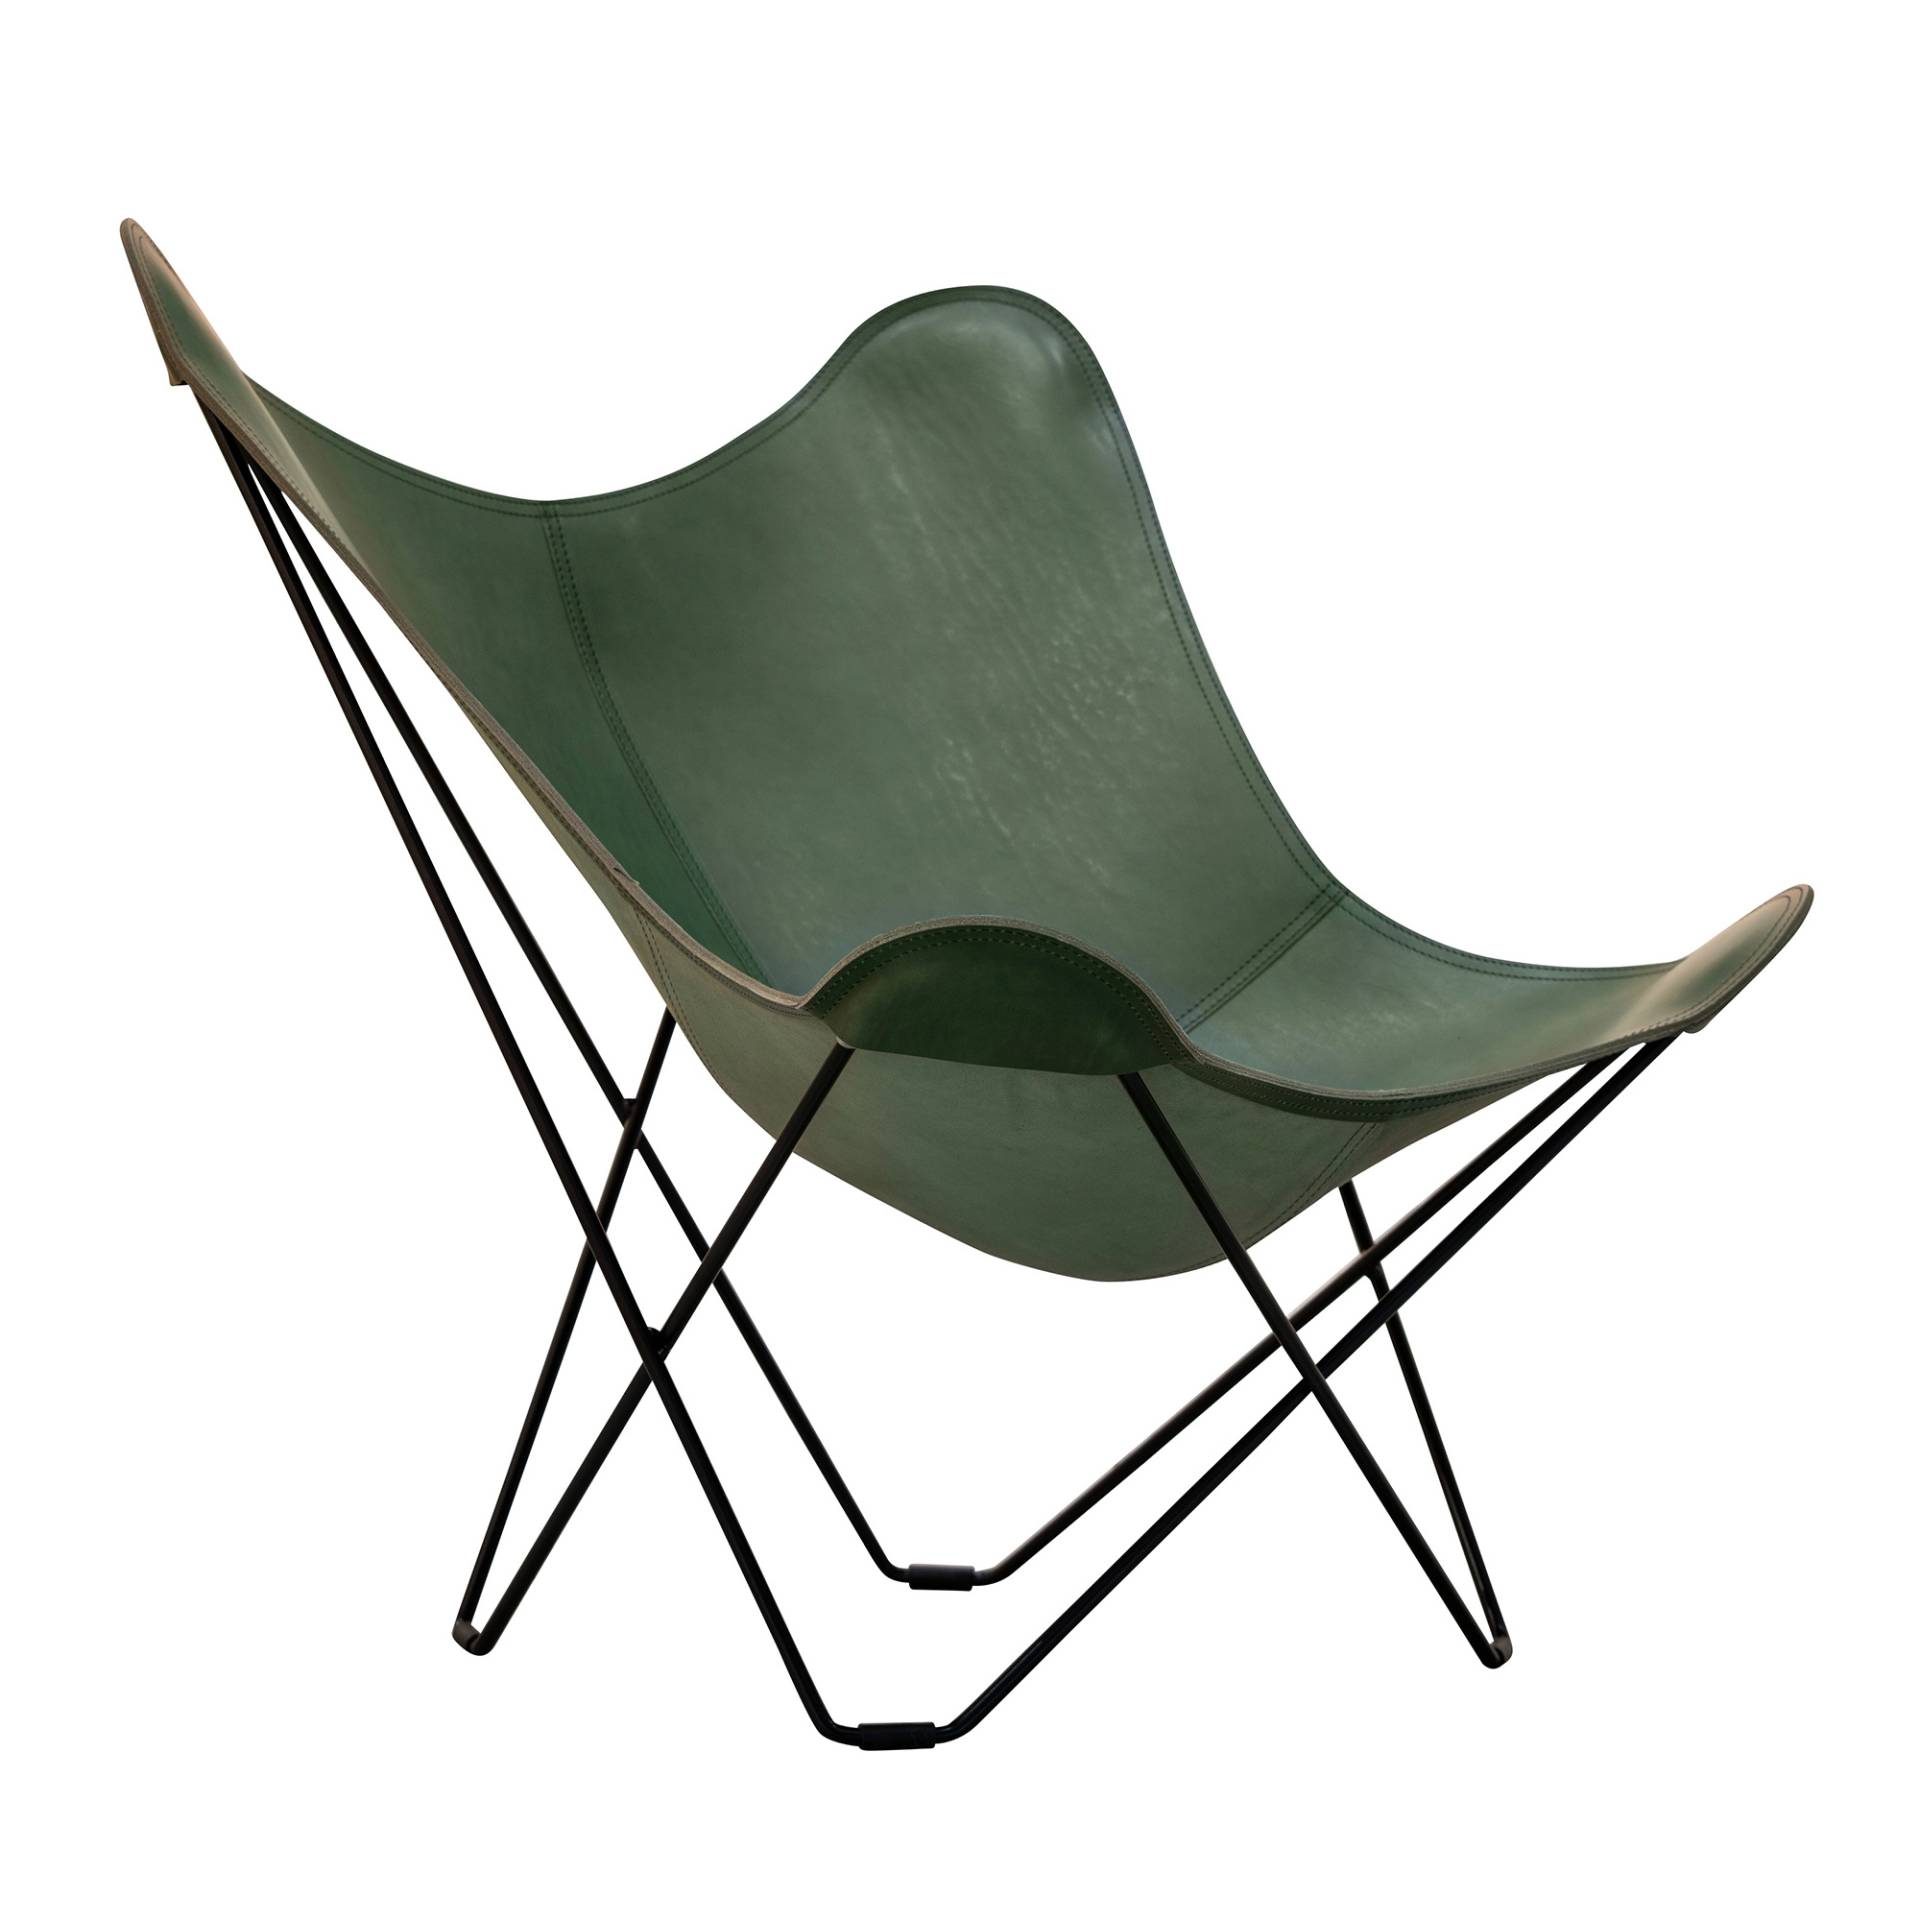 cuero - Mariposa Butterfly Chair Leder farbig - grün/gegerbtes Leder/BxHxT 87x92x86cm/Gestell Stahl schwarz lackiert von cuero